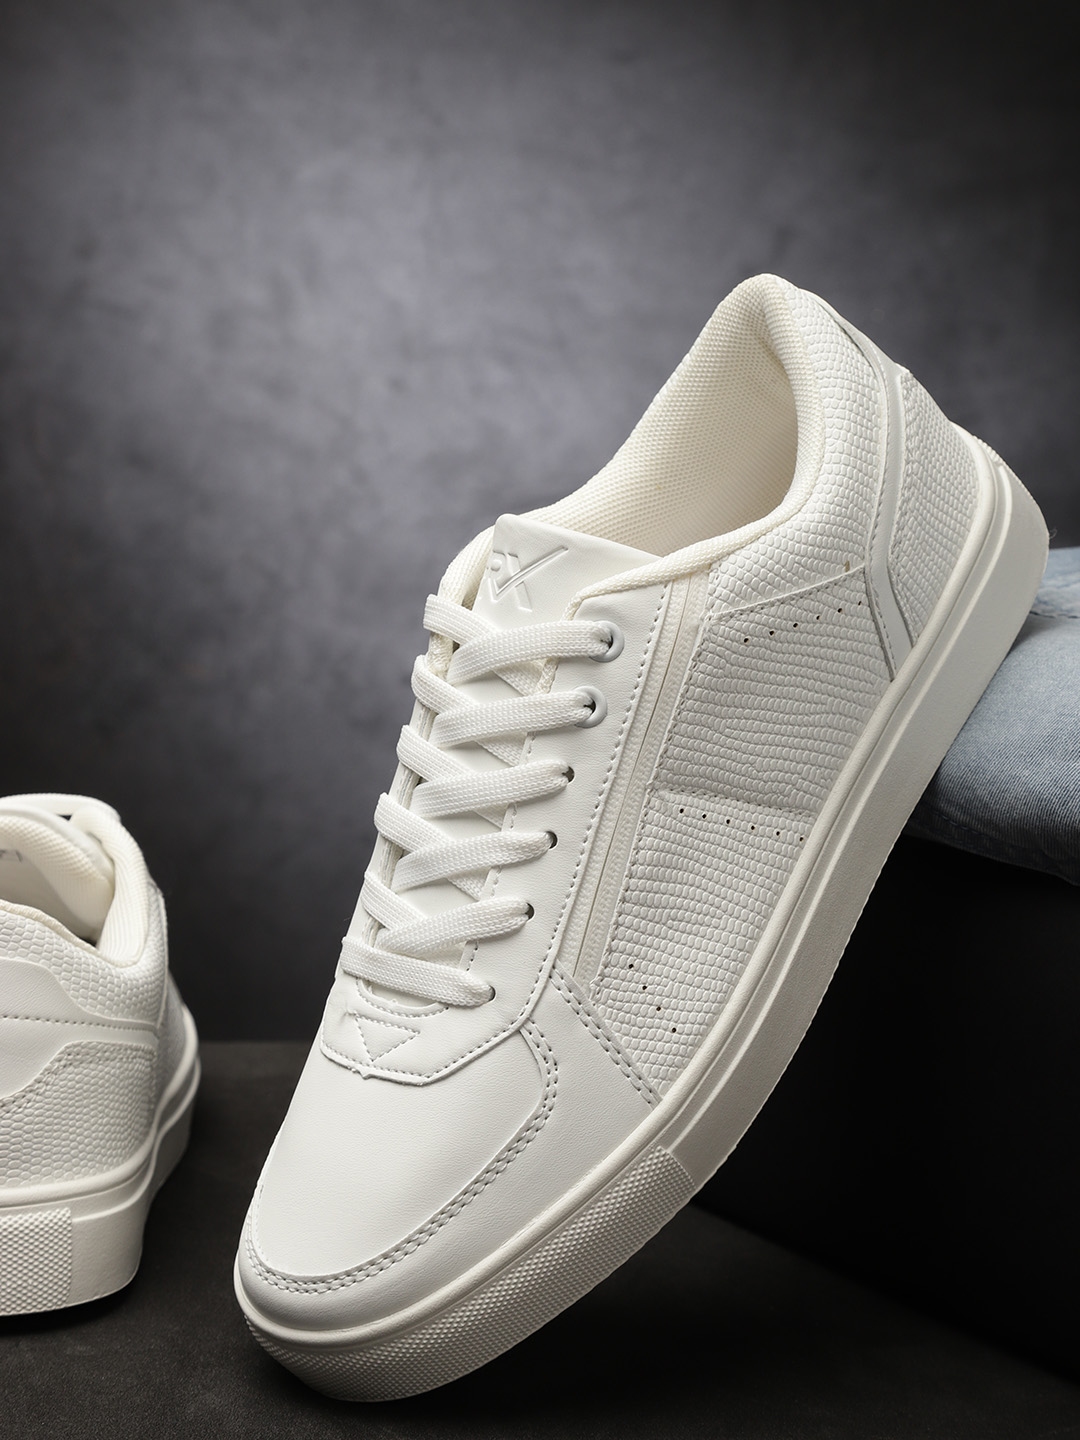 white hrx sneakers